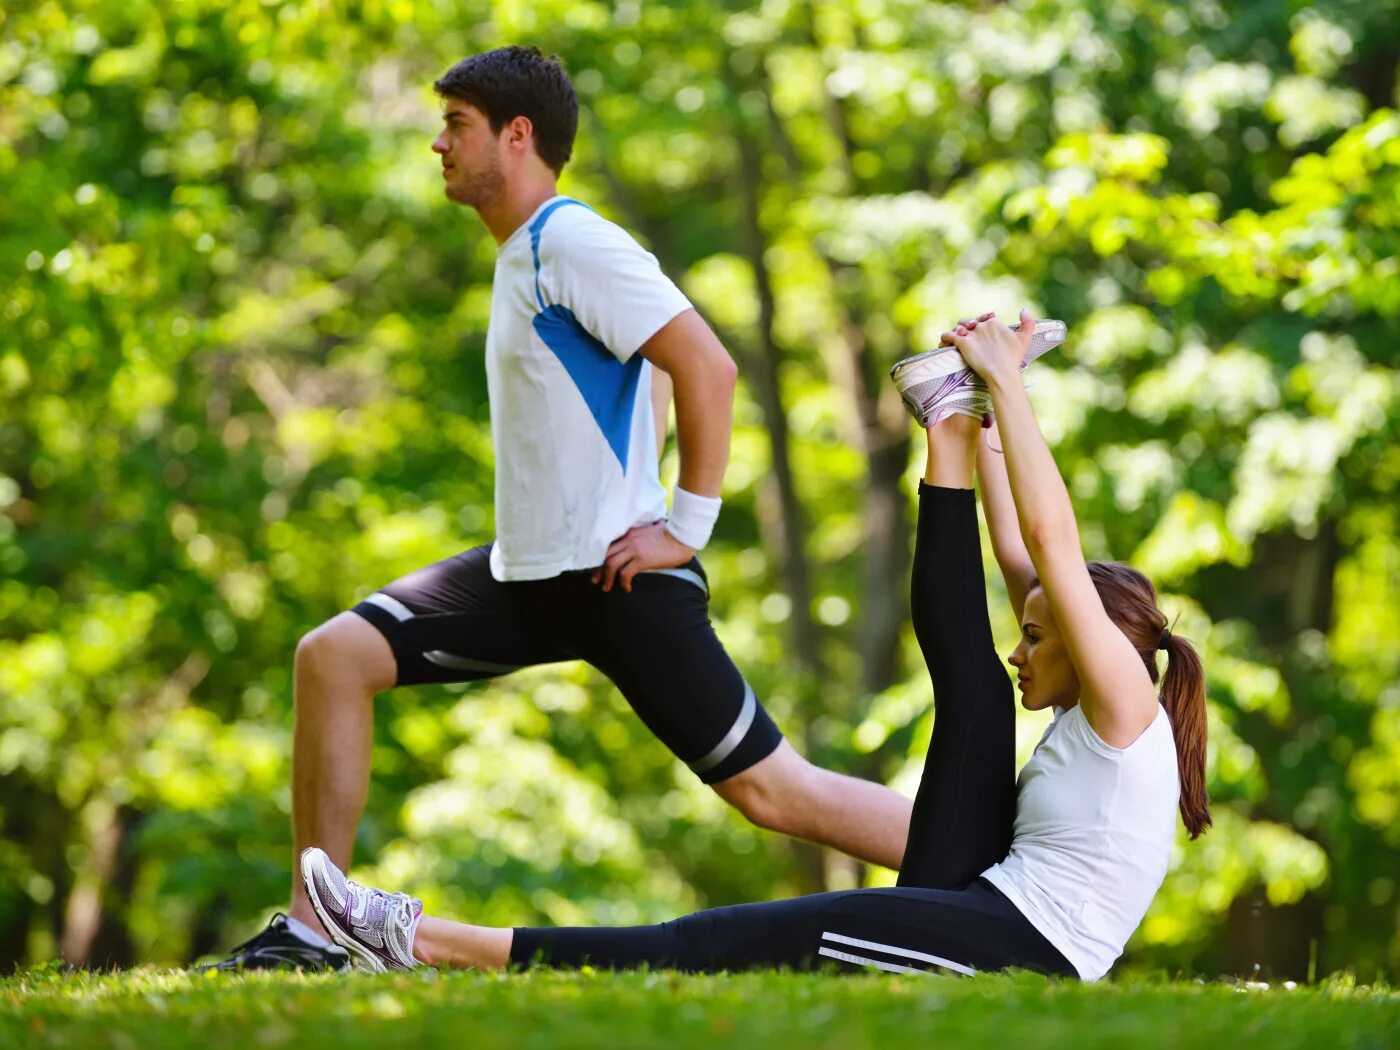 What sports do you do regularly. Физические упражнения. Спортивные люди. Здоровый образ жизни. Активный образ жизни.